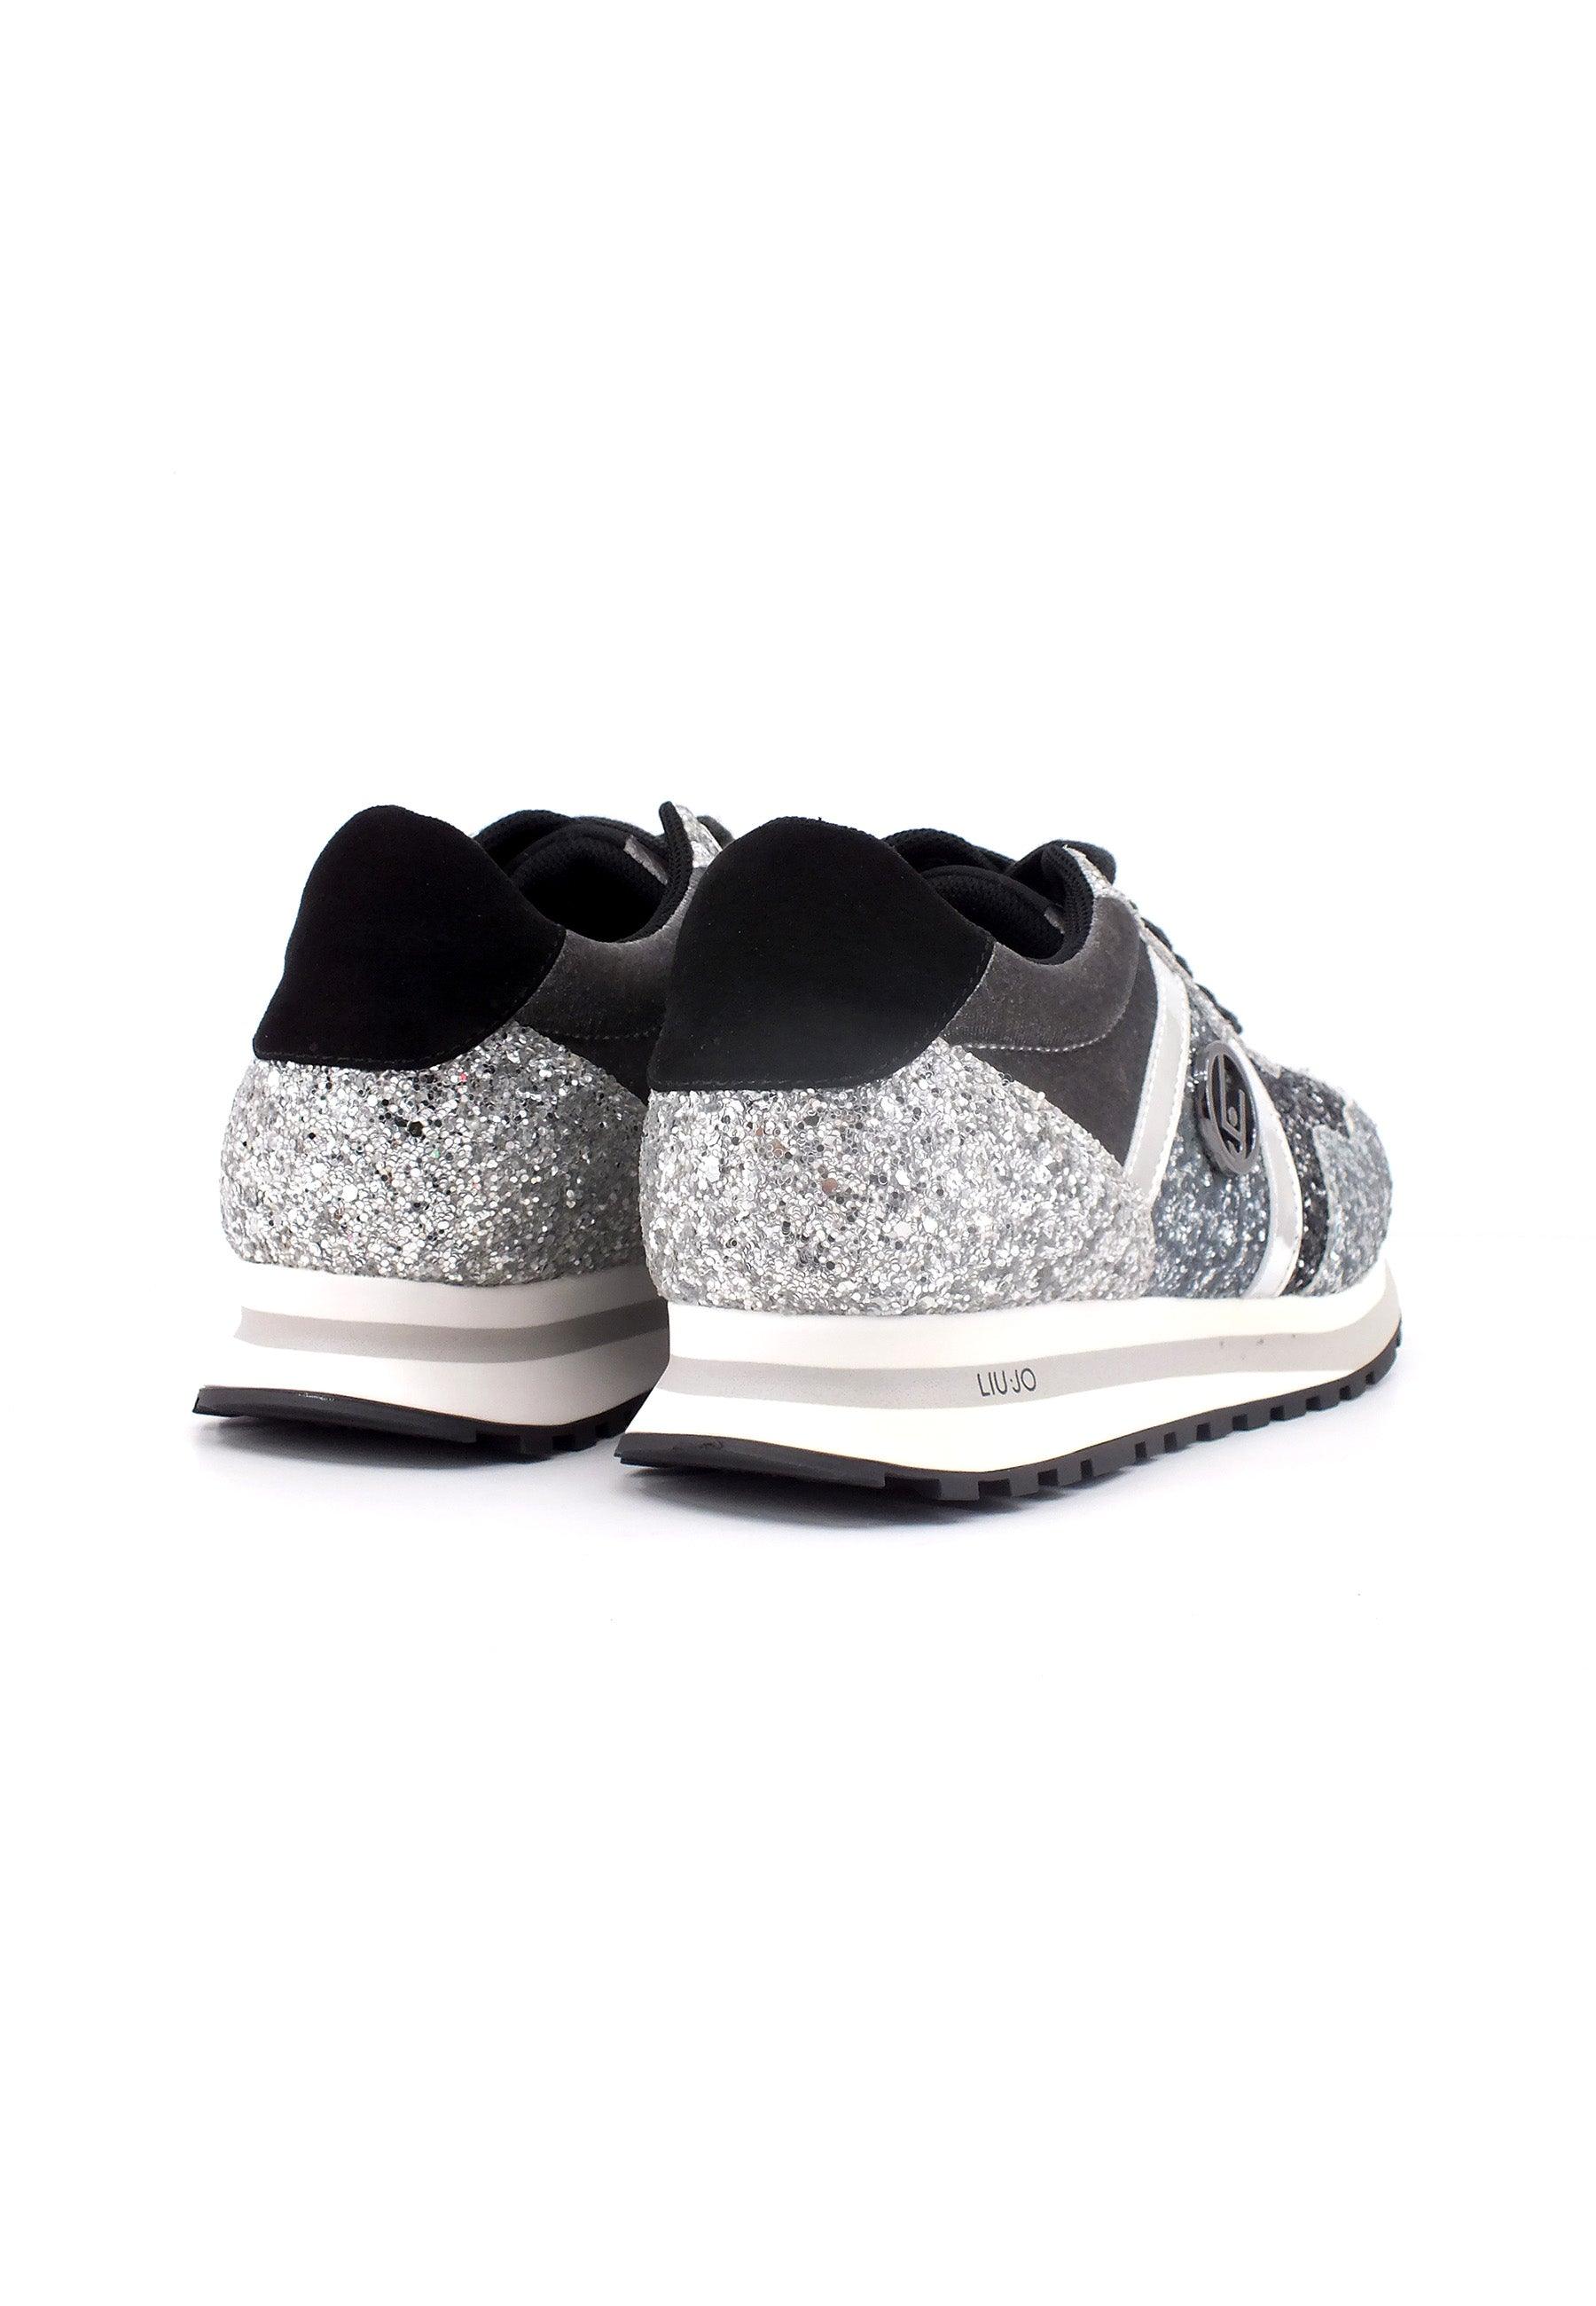 LIU JO Wonder 629 Sneaker Donna Silver 4F3701TX007 - Sandrini Calzature e Abbigliamento